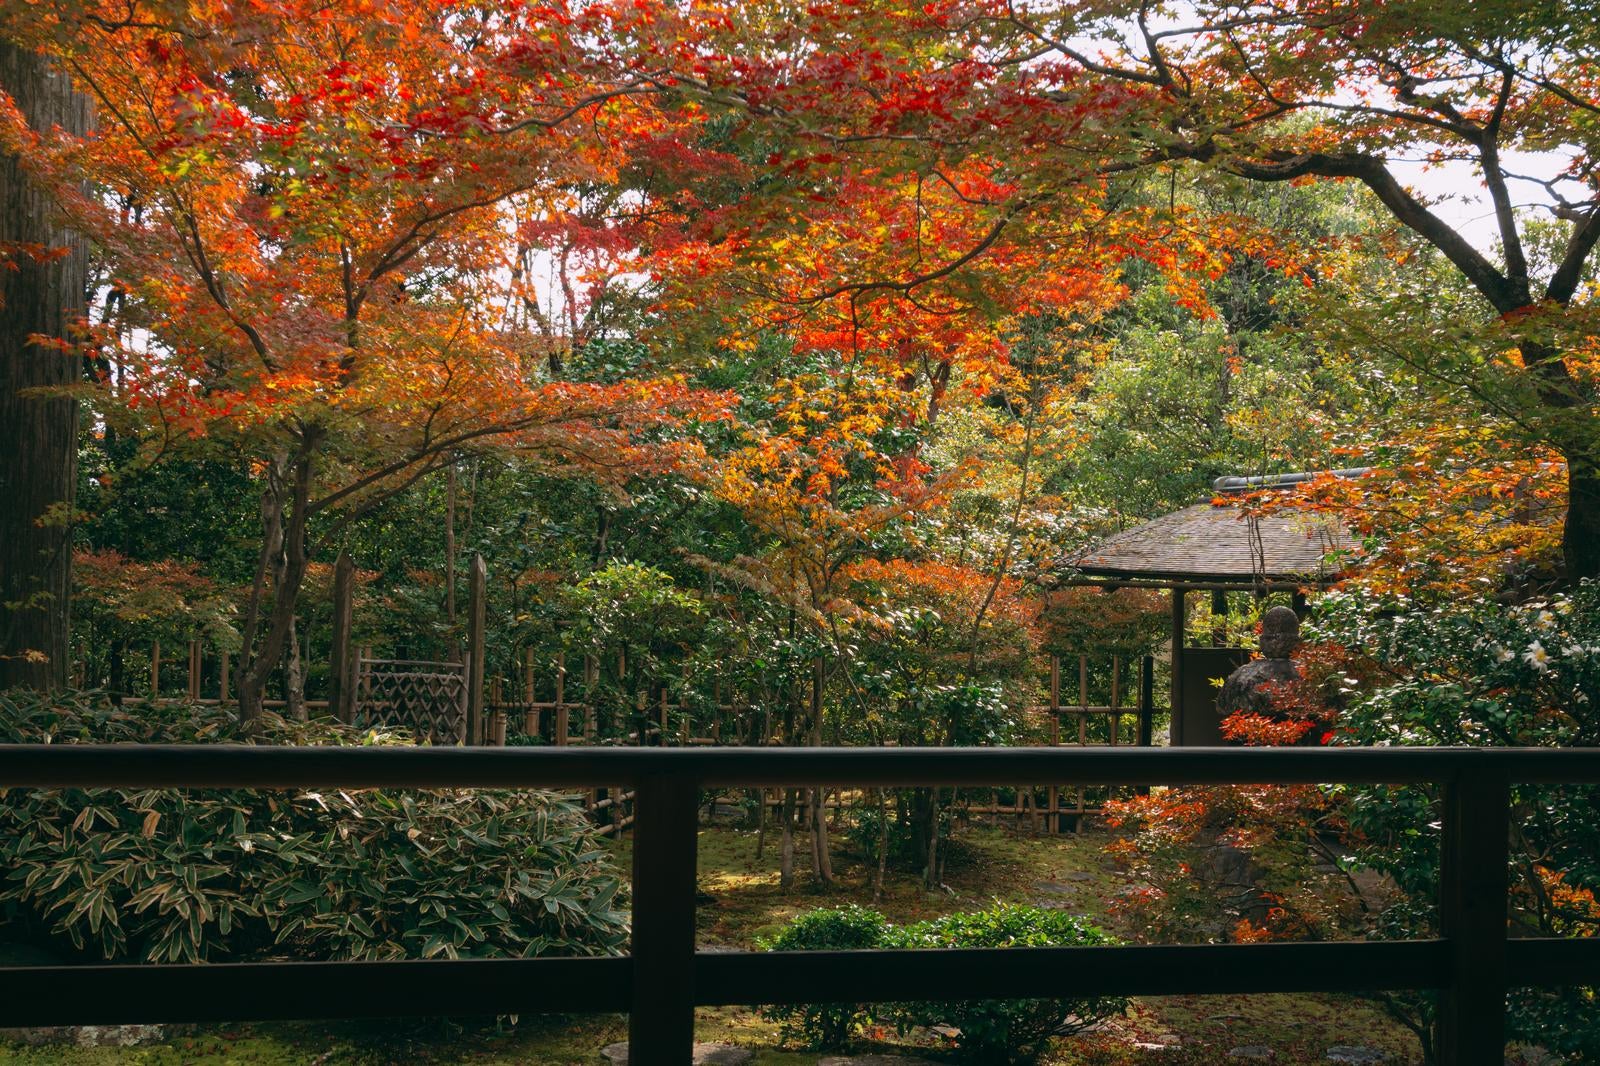 「色づいた木々の中に建つ竹で組まれた中門とその右手に見える腰掛待合」の写真